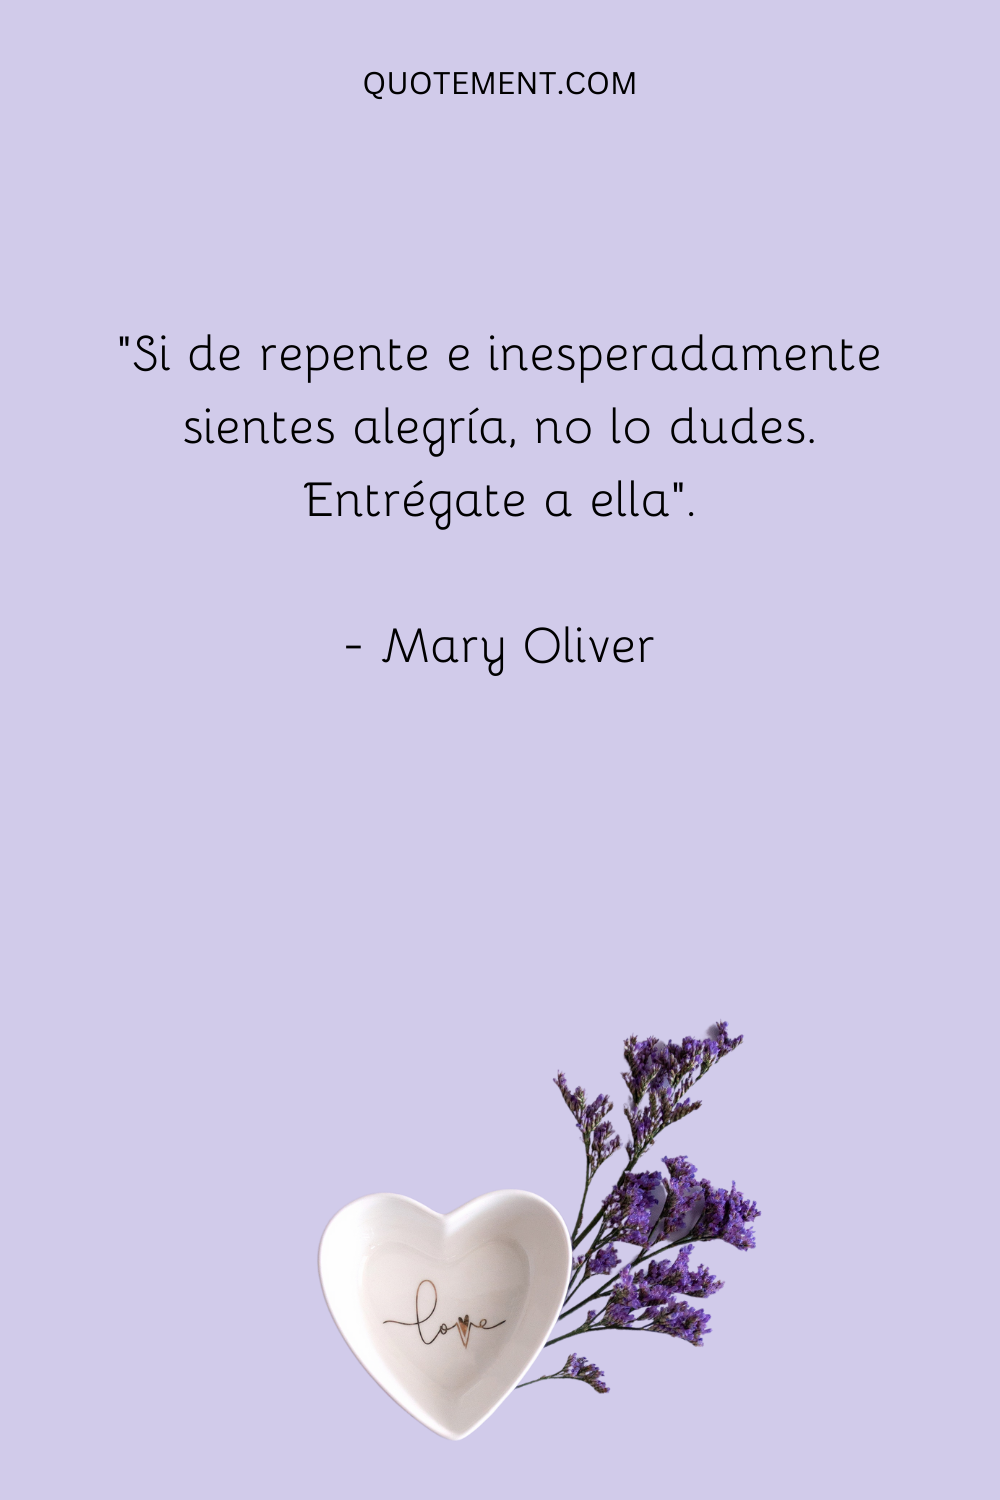 "Si de repente e inesperadamente sientes alegría, no lo dudes. Entrégate a ella". - Mary Oliver